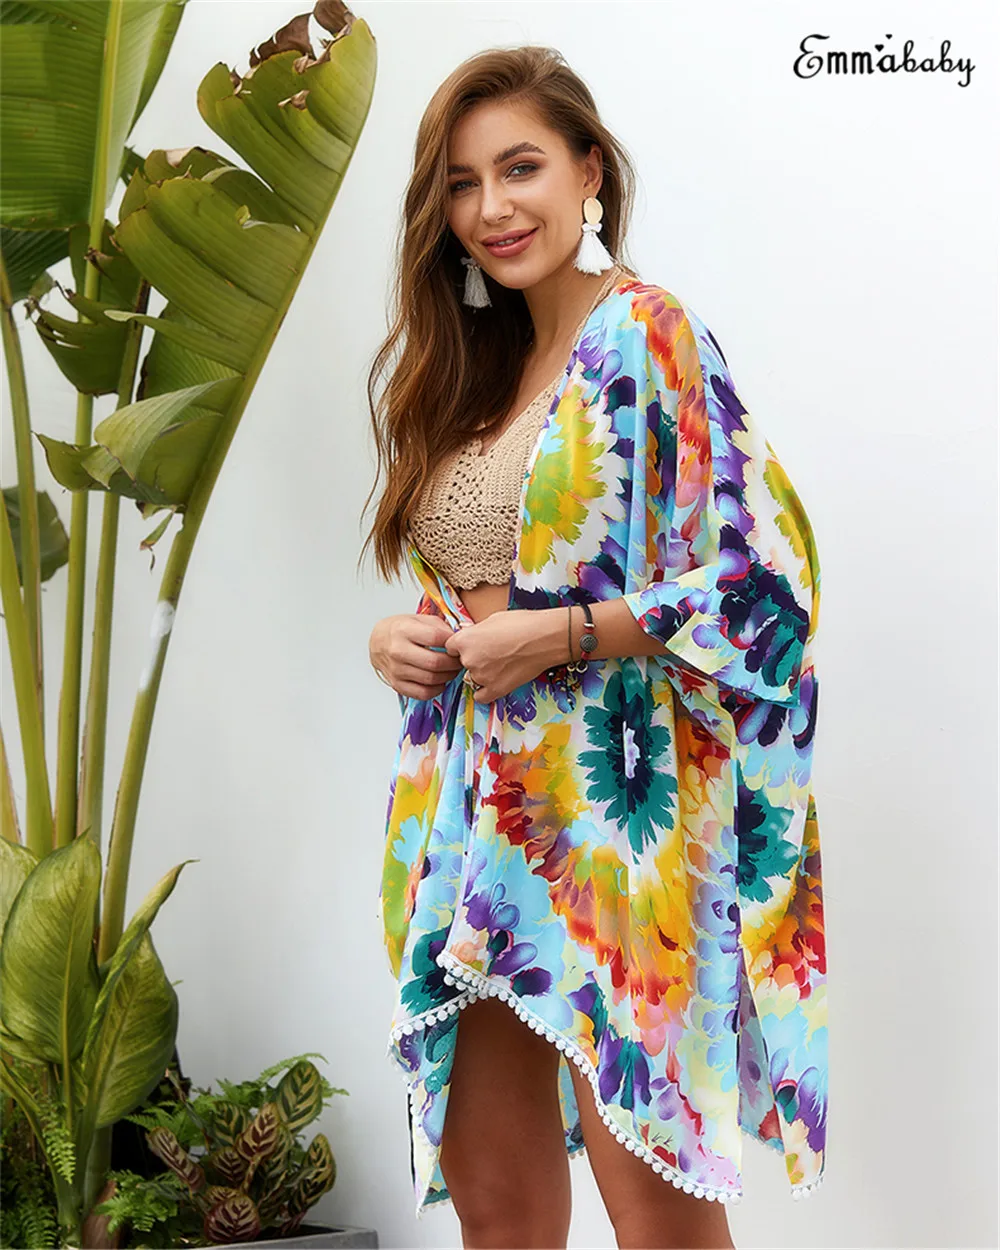 Женская шифоновая свободная шаль с принтом Кимоно Кардиган Топ накидка блузка пляжная одежда